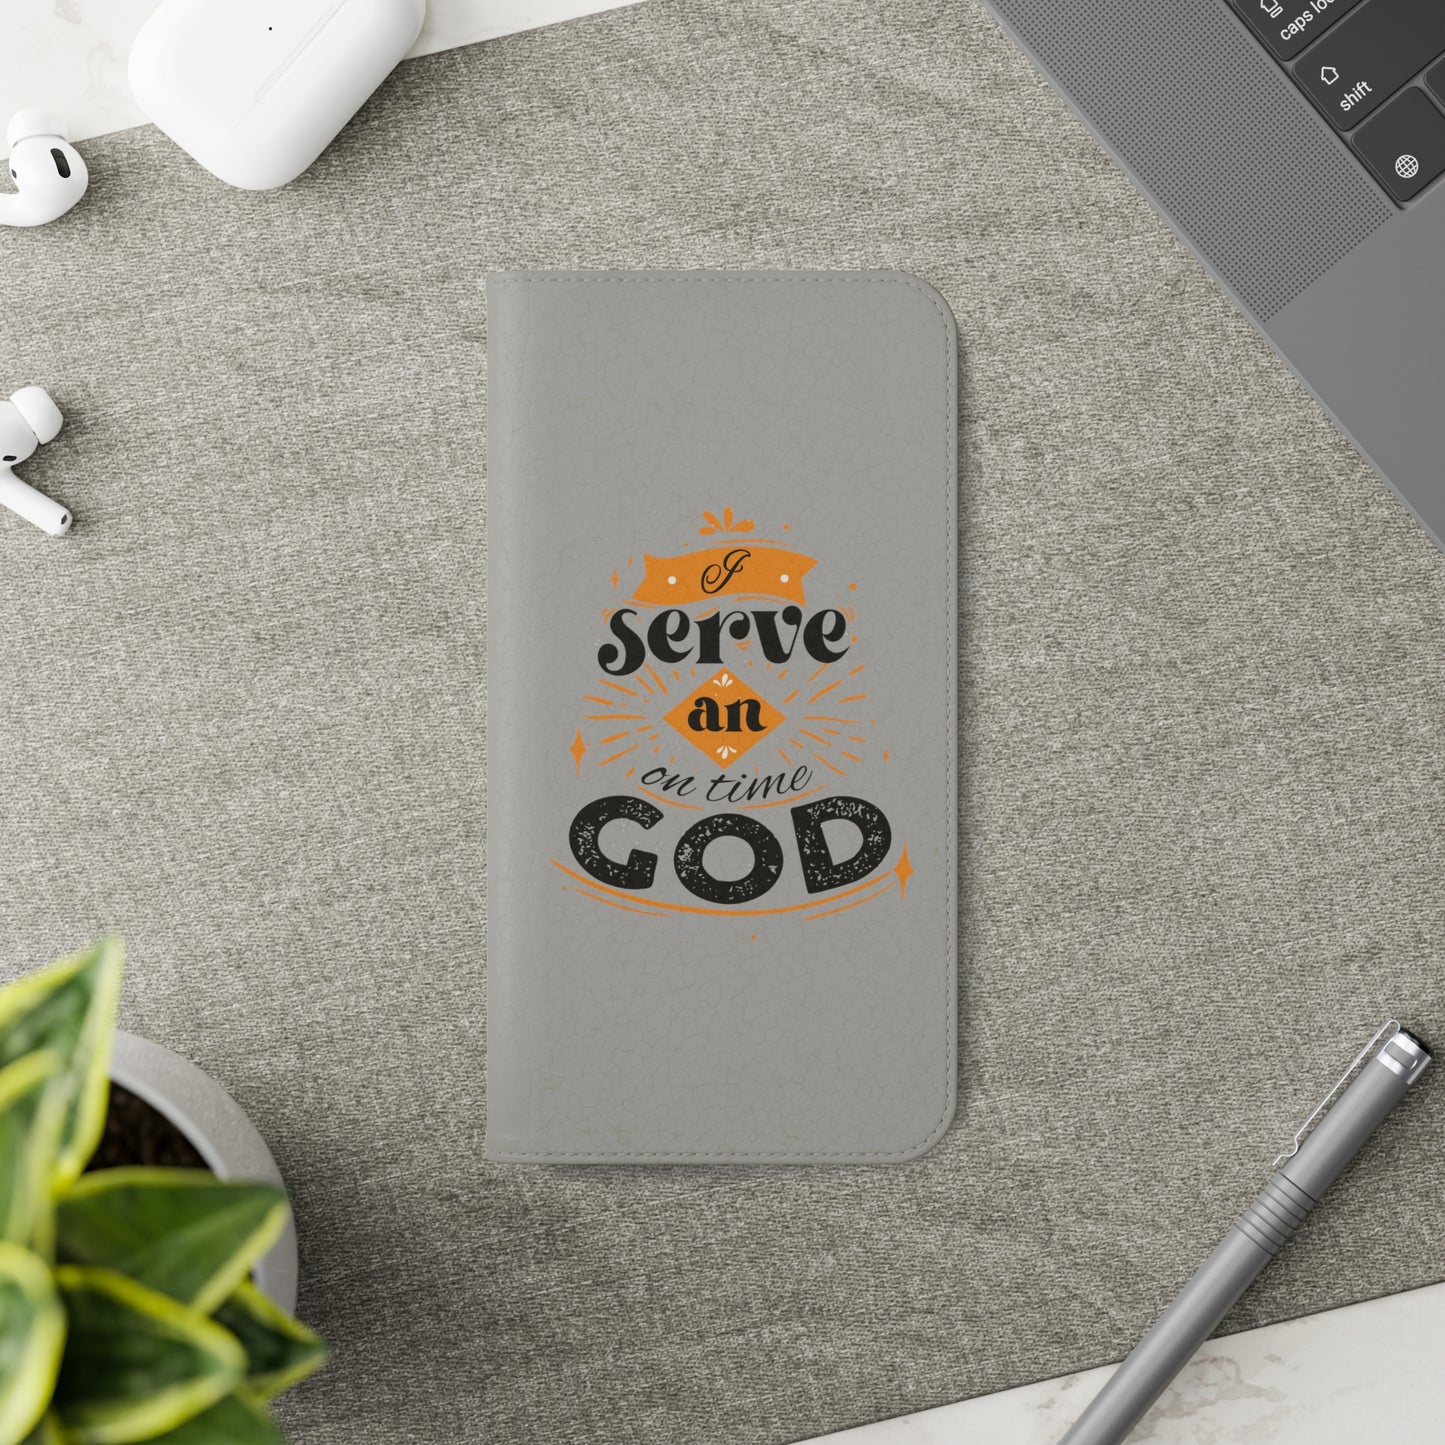 I Serve An On Time God  Phone Flip Cases